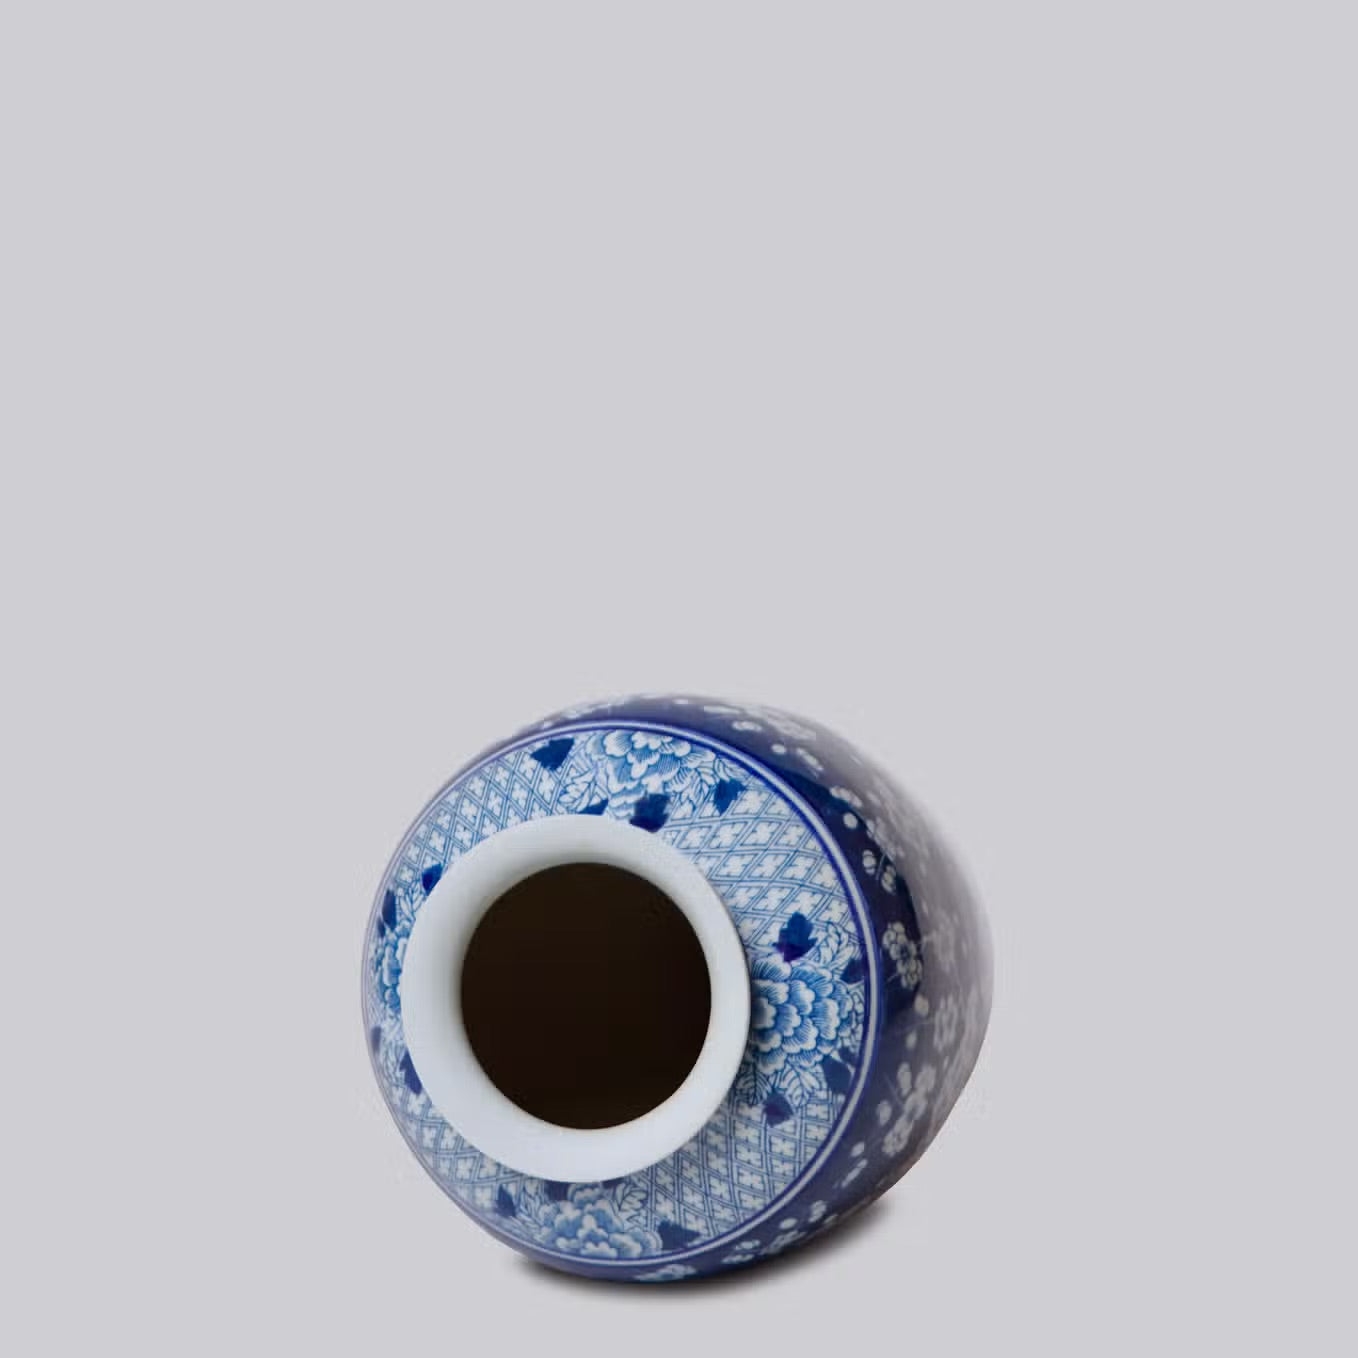 Blue and White Porcelain Plum Blossom Vase